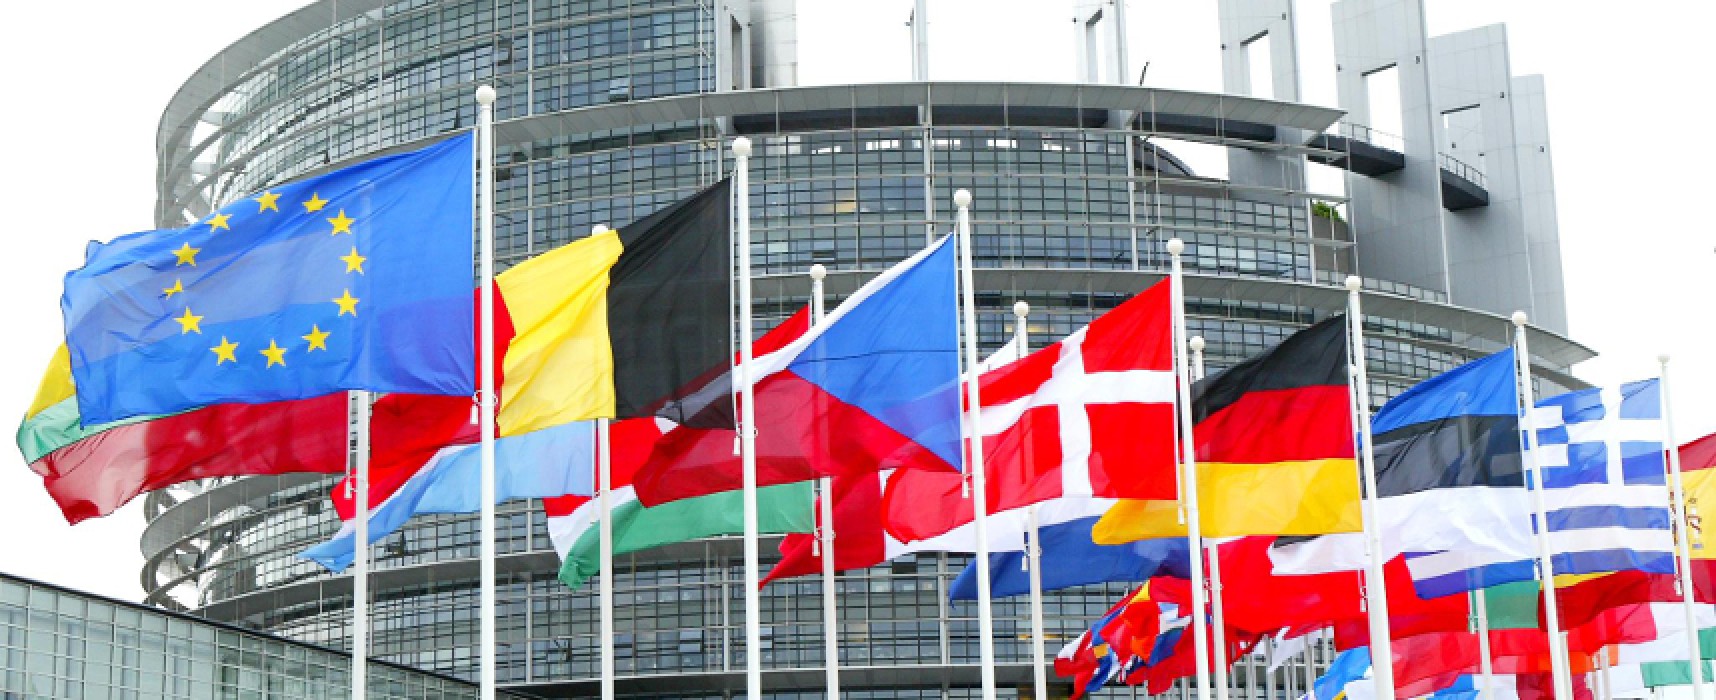 La Commissione europea cerca innovatori in campo sociale / modalità di partecipazione